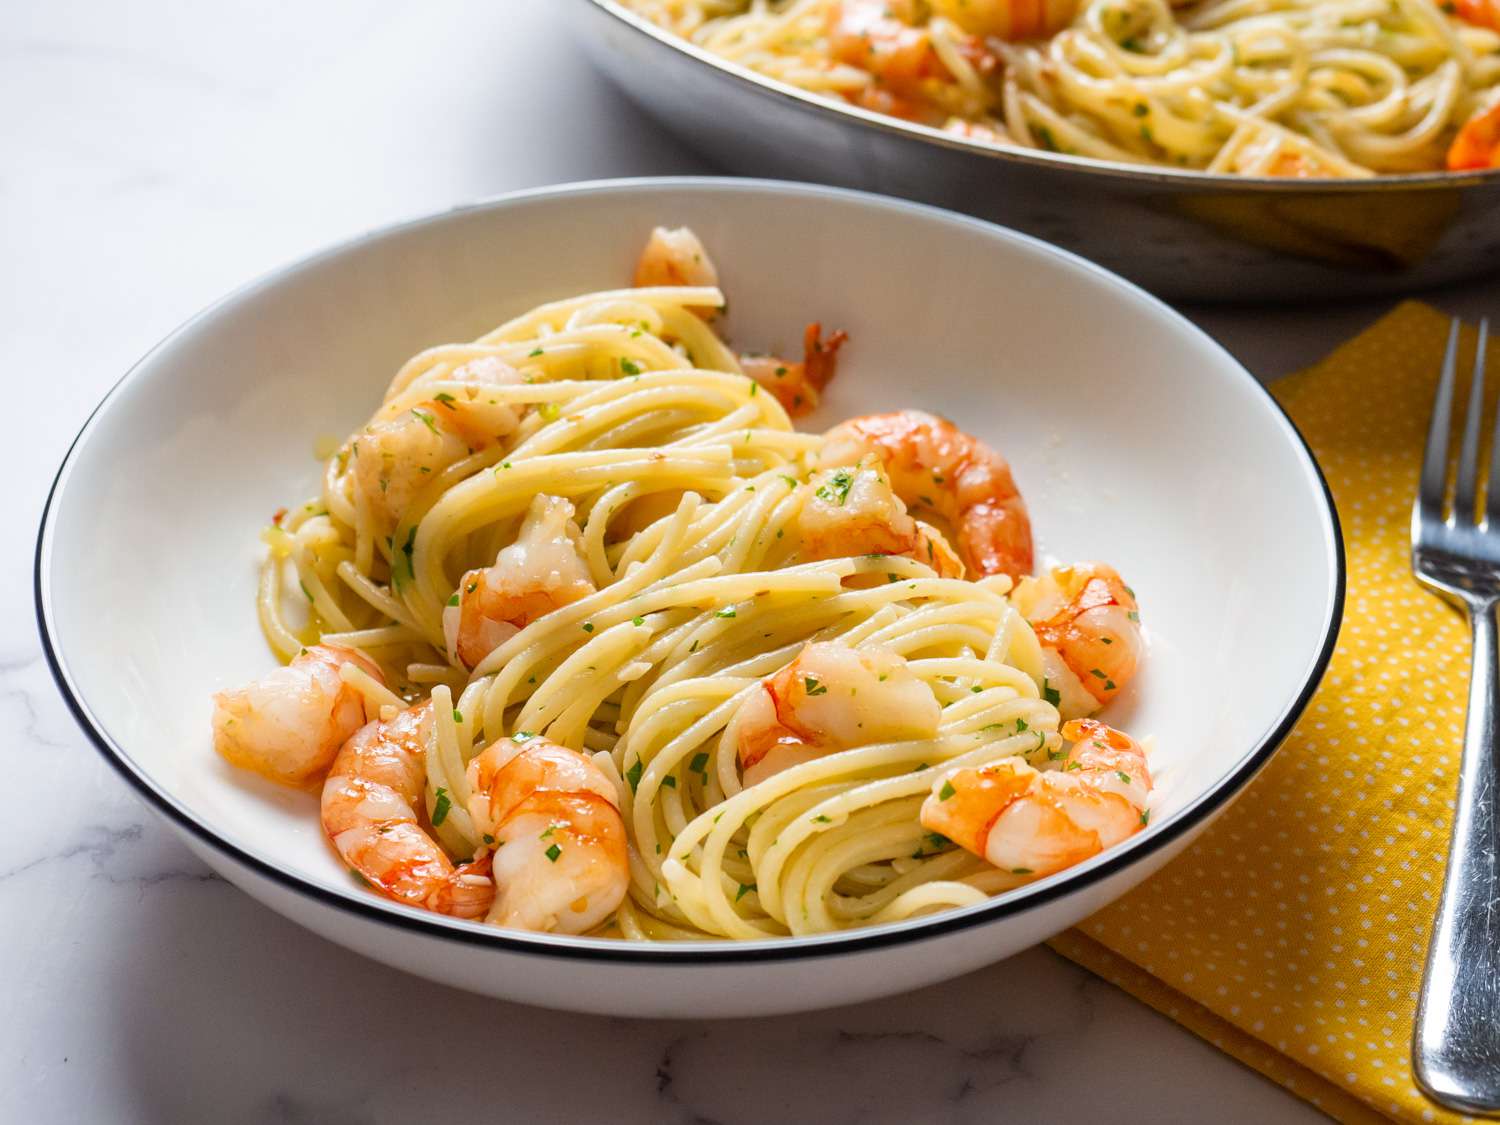 A bowl of shrimp scampi with pasta.